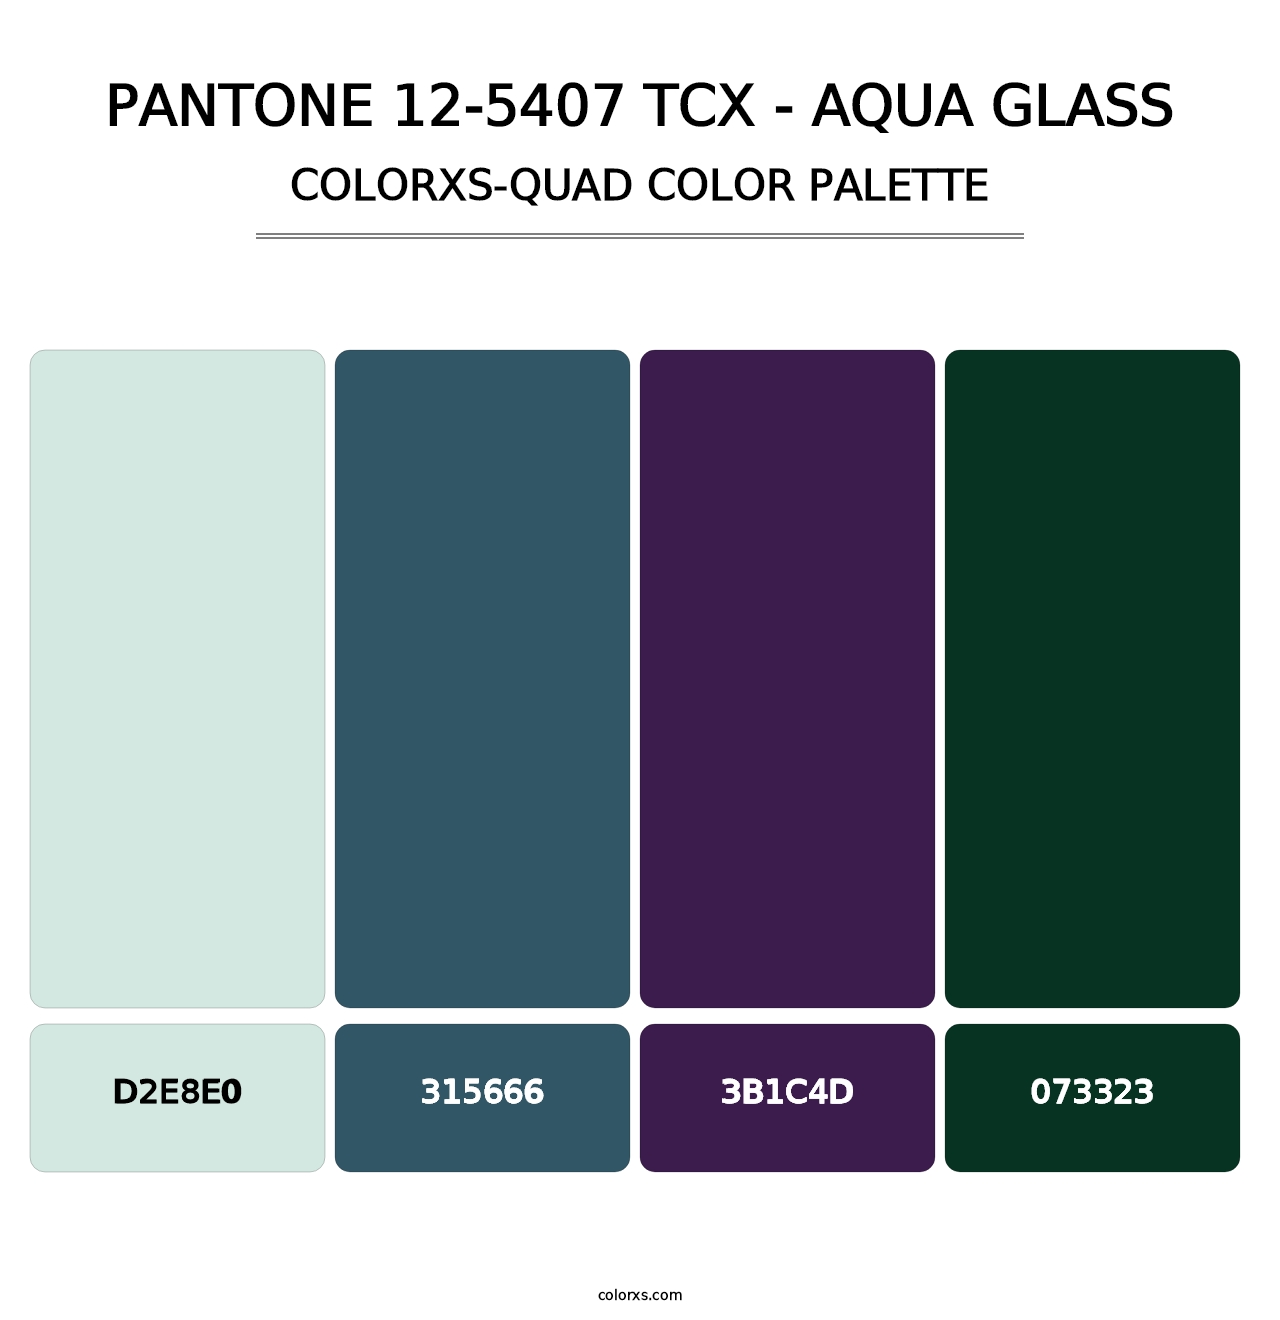 PANTONE 12-5407 TCX - Aqua Glass - Colorxs Quad Palette